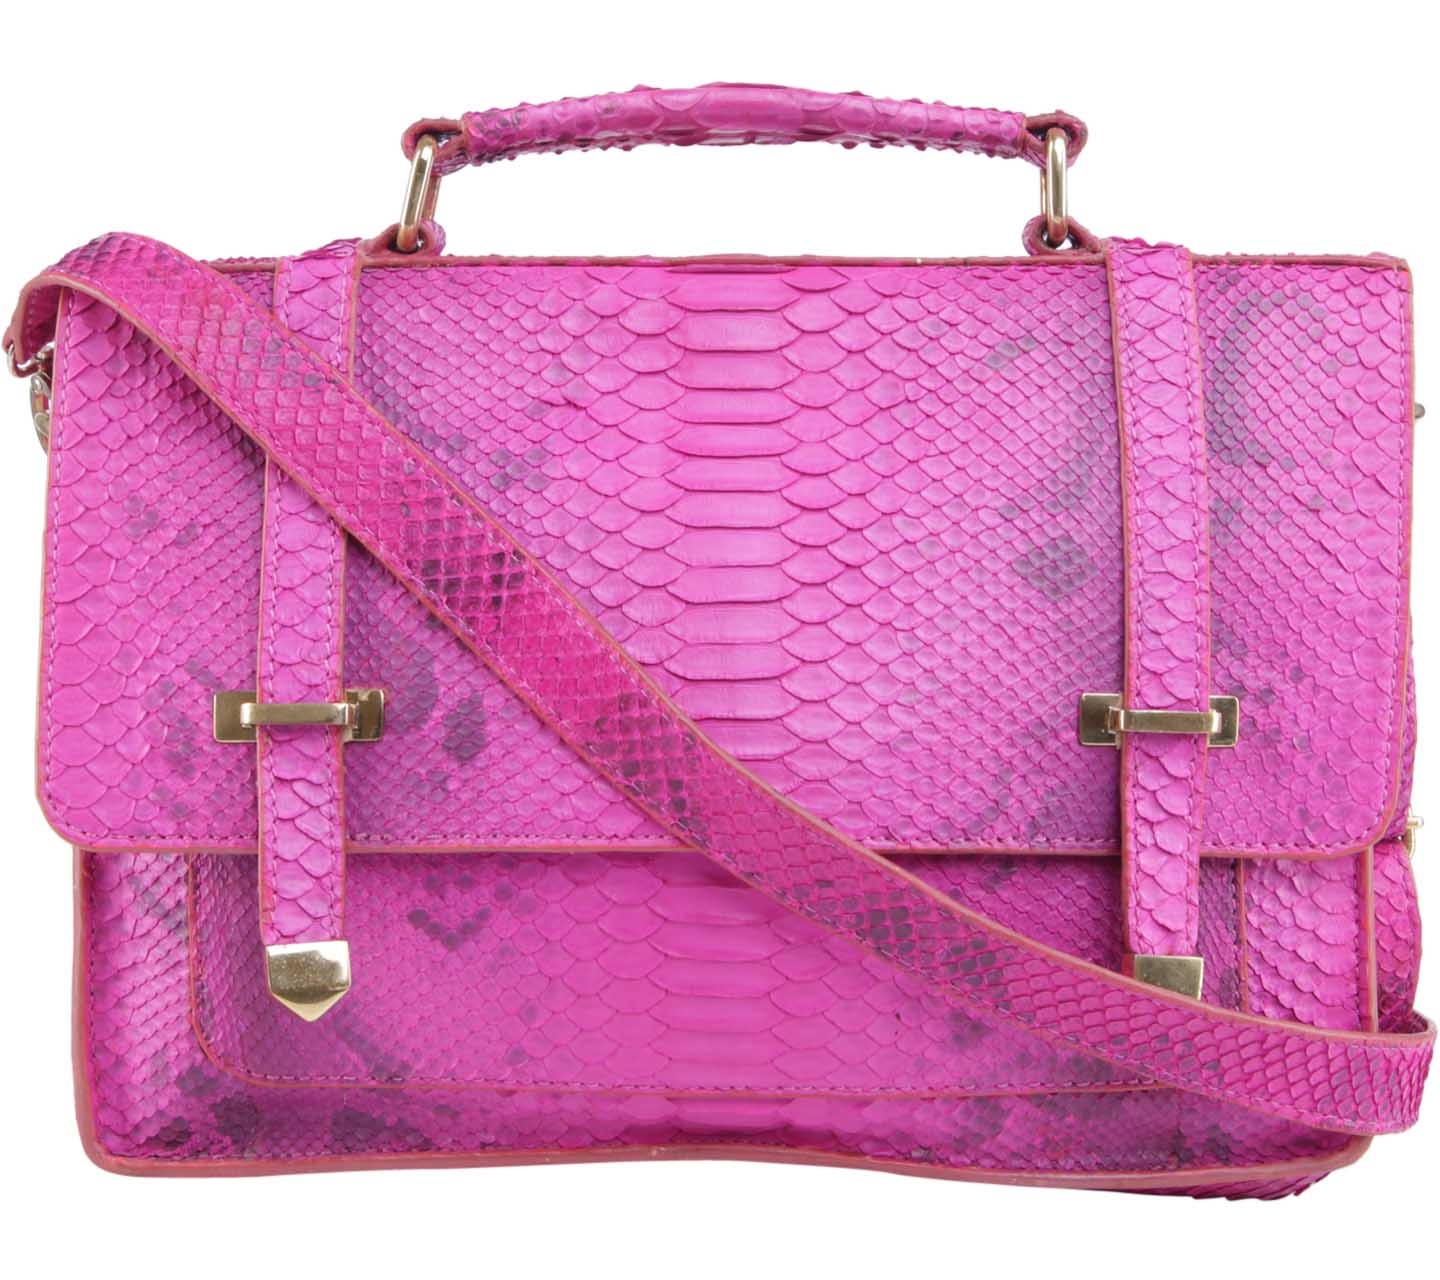 Marnova Pink Satchel Bag